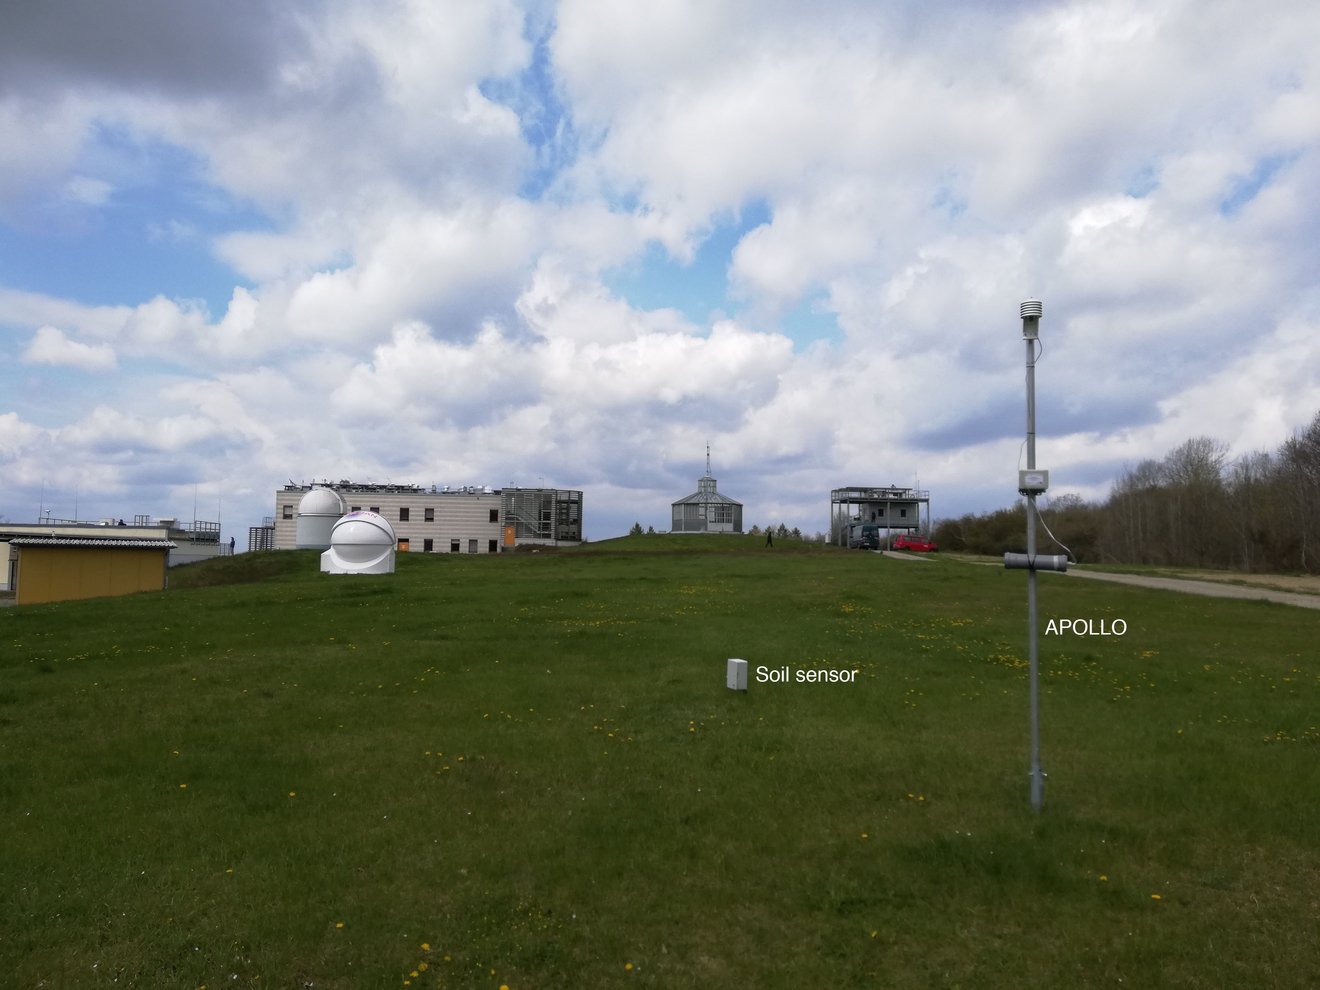 Meteorologischen Observatorium in Lindenberg im Hintergrund mit einer APOLLO Station und ein Bodensensor im Vordergrund